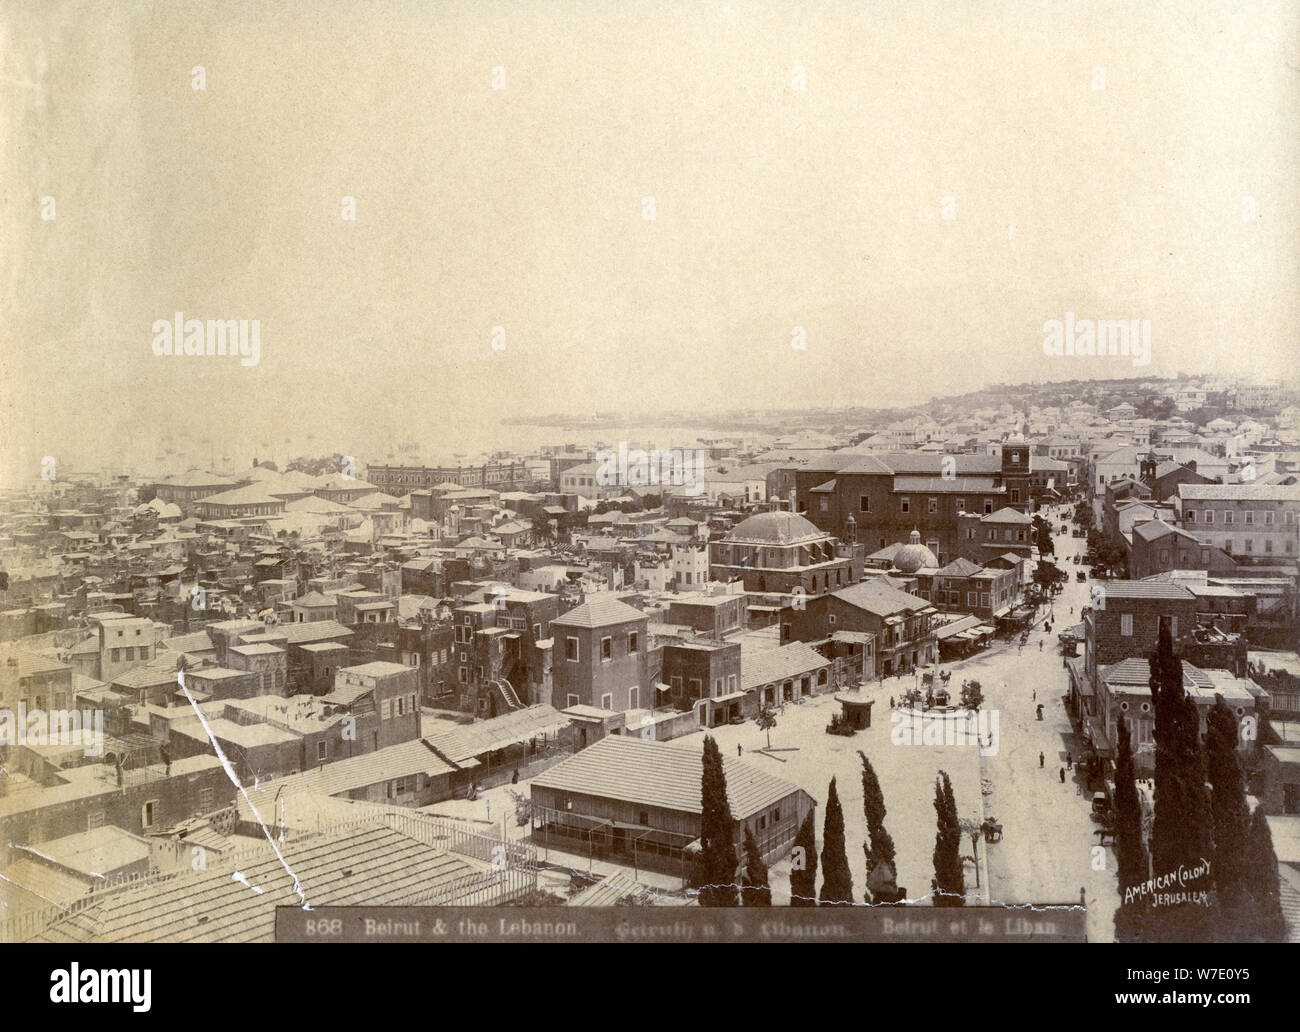 Beirut, Libano, tardo XIX o agli inizi del XX secolo.Artista: American Colony Foto Stock